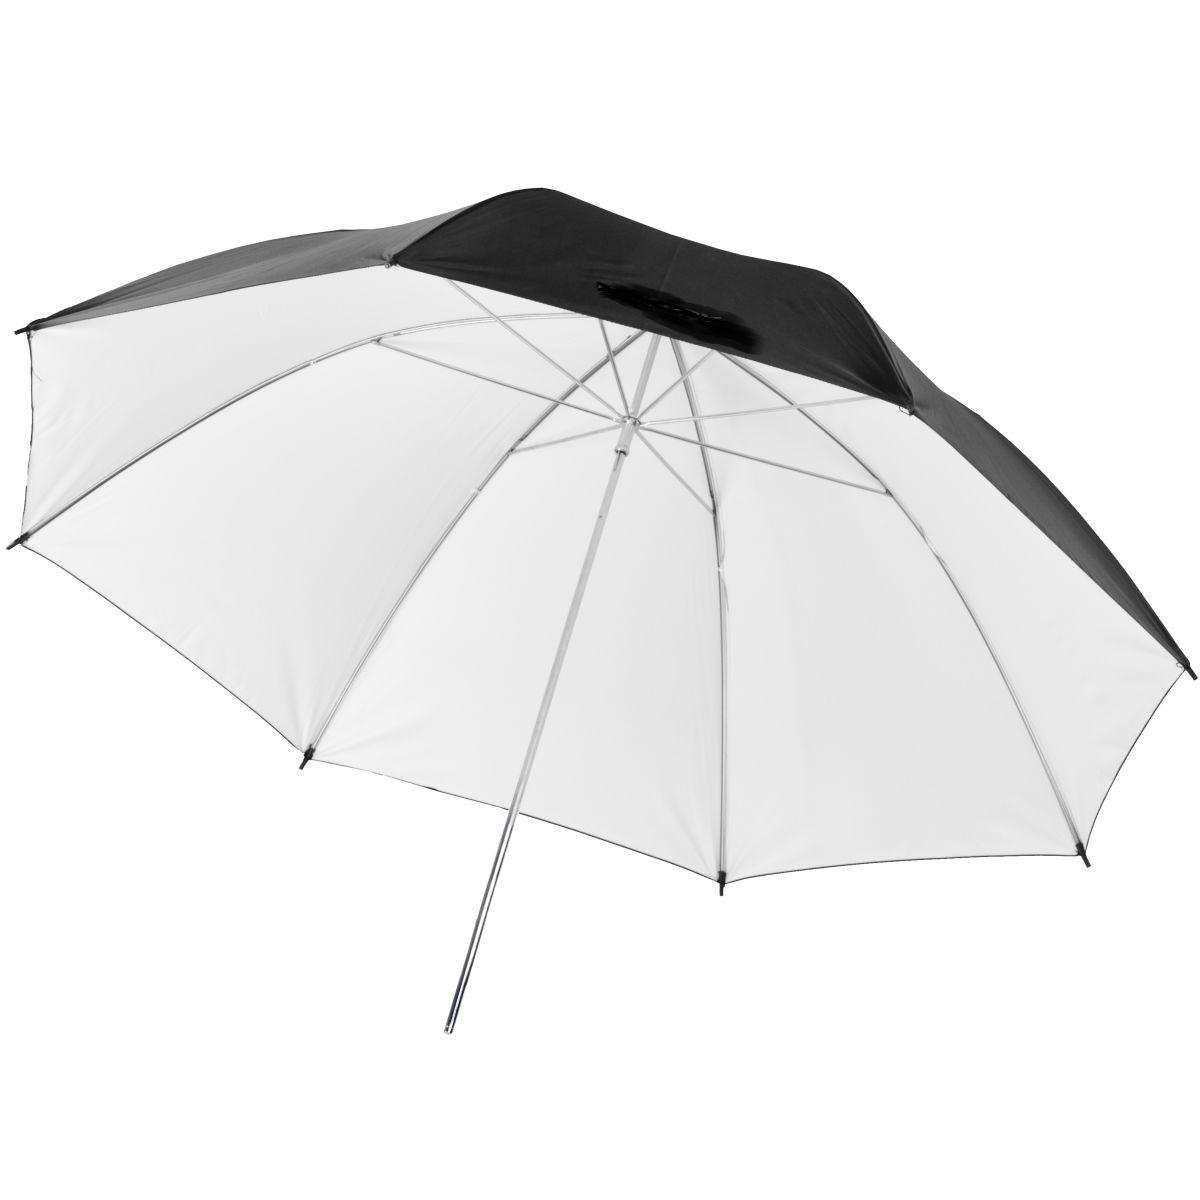 Studiový fotografický odrazový bílý - černý deštník, 83cm 